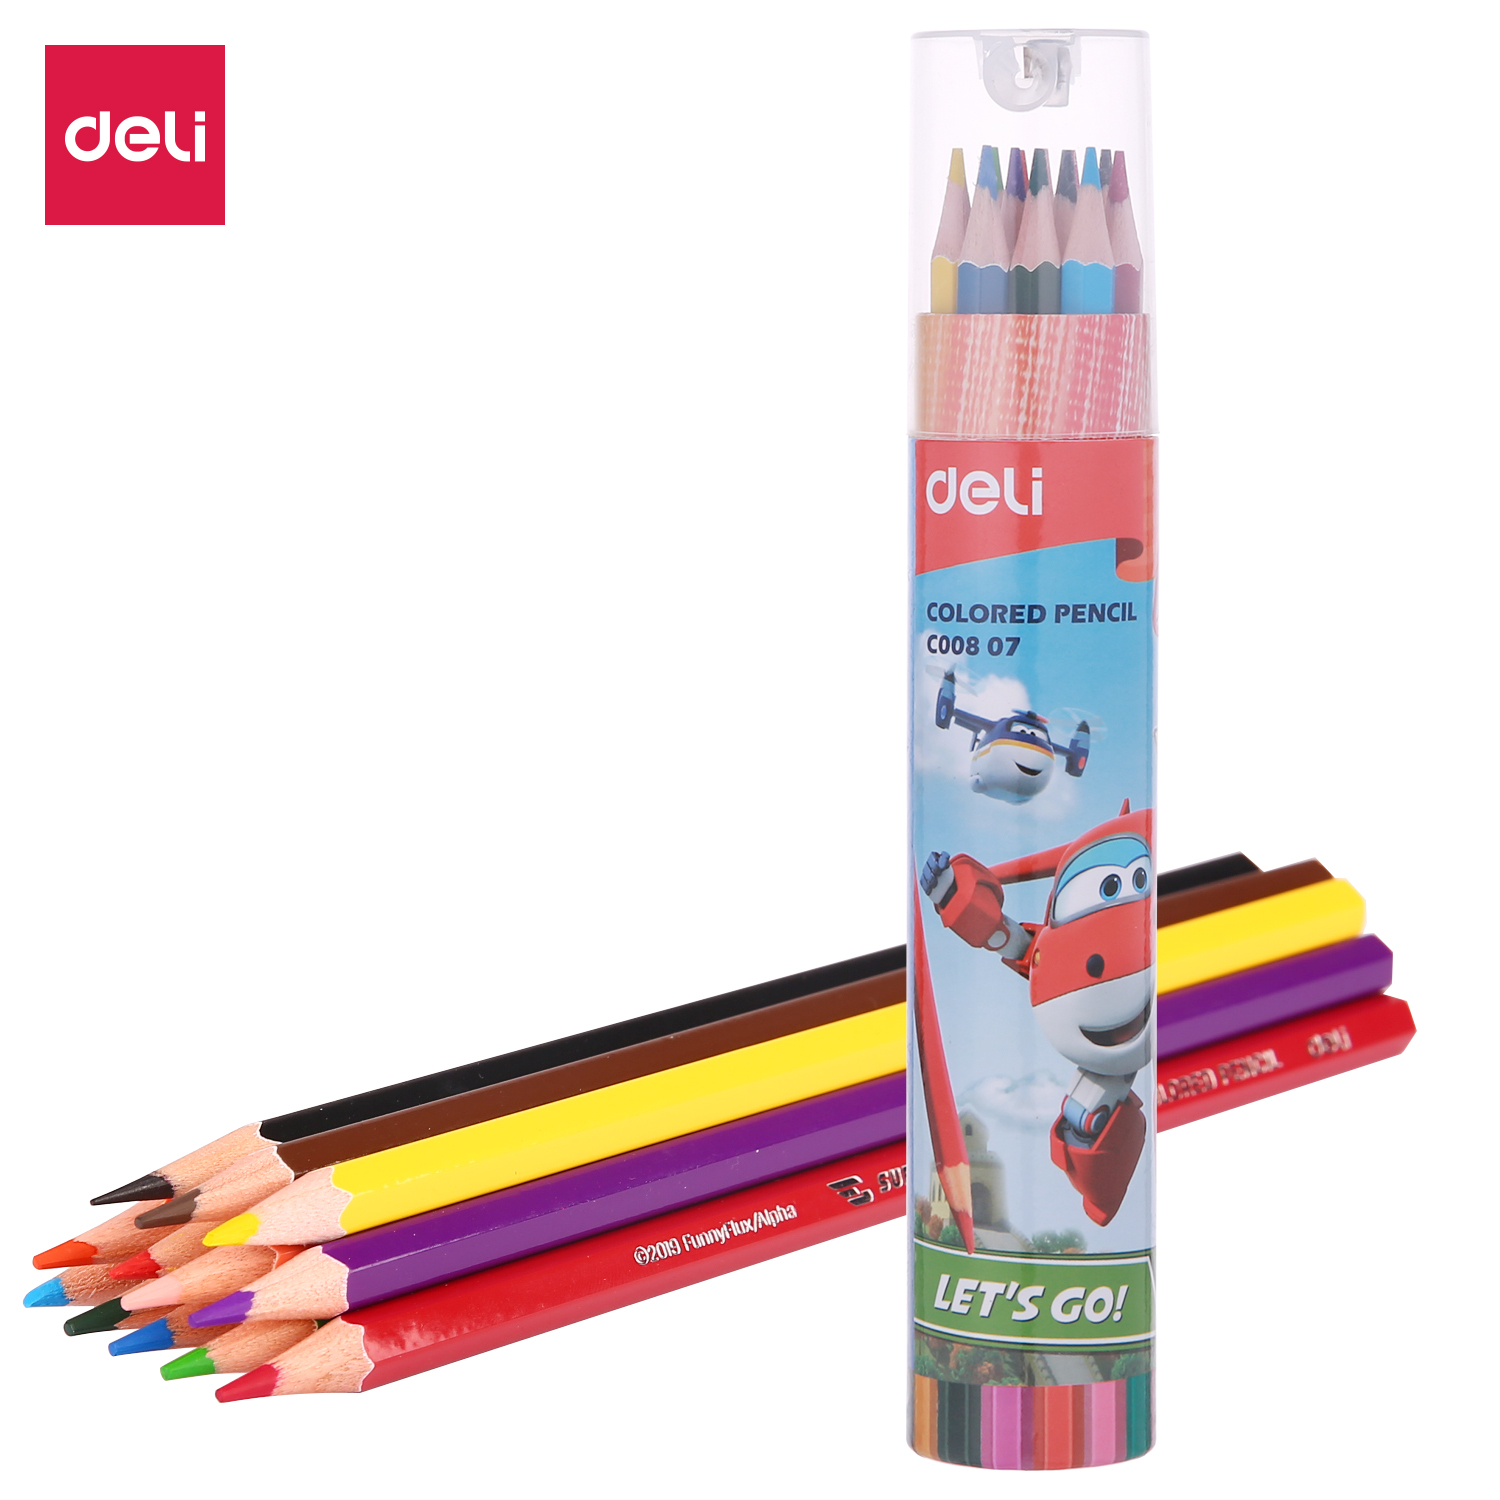 Deli-EC00807 Colored Pencil